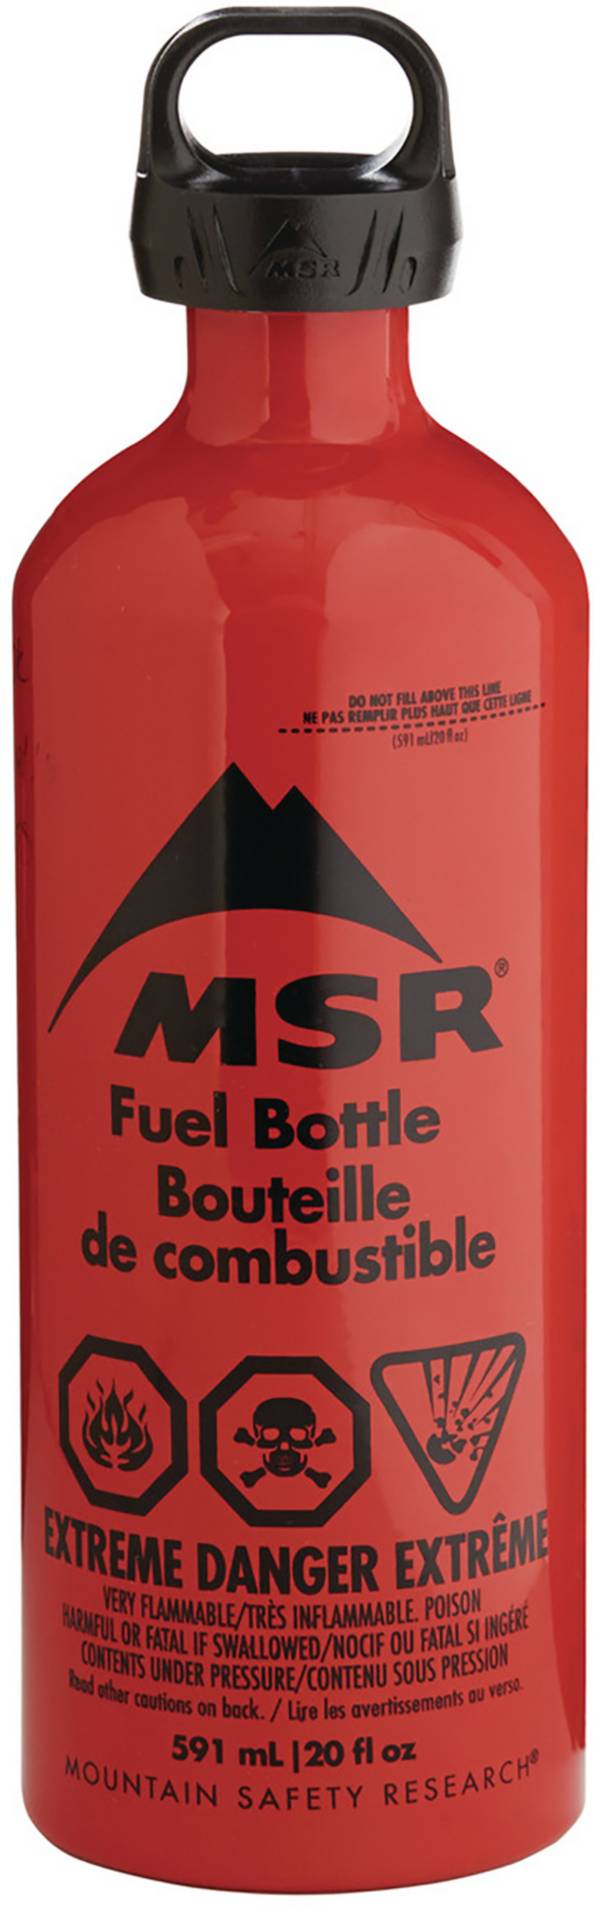 MSR 20 oz. Fuel Bottle product image